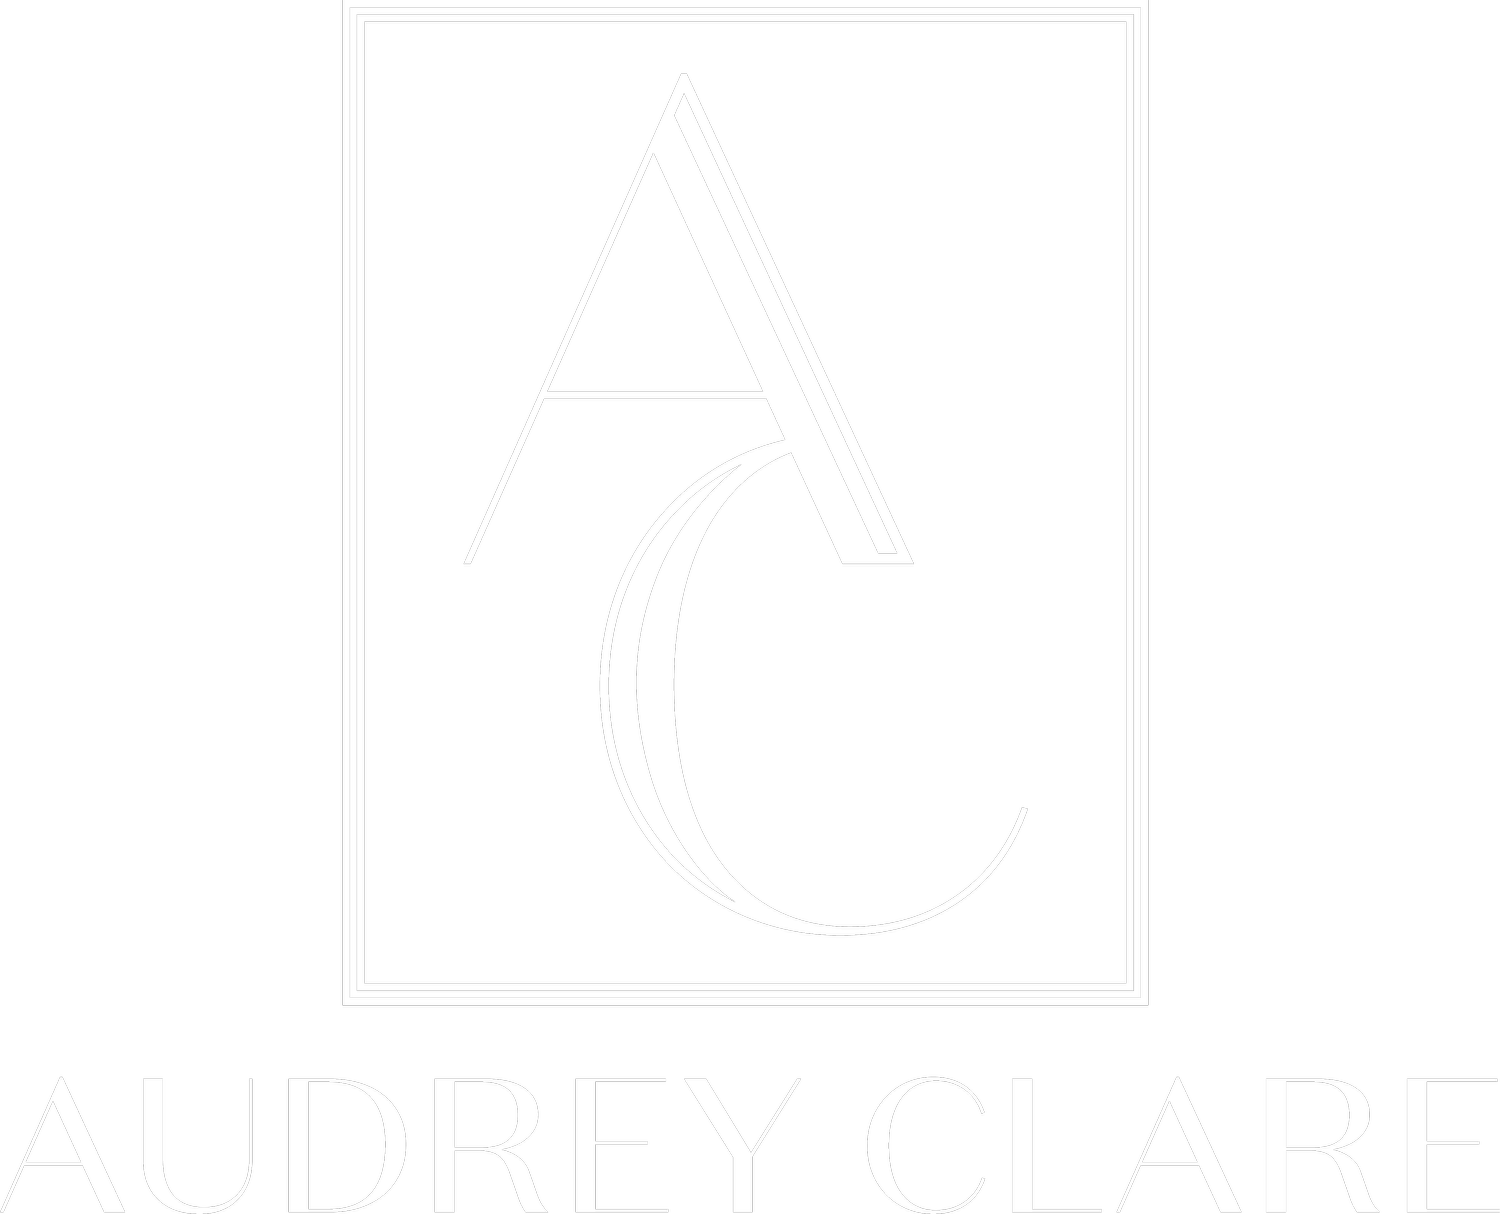 Audrey Clare